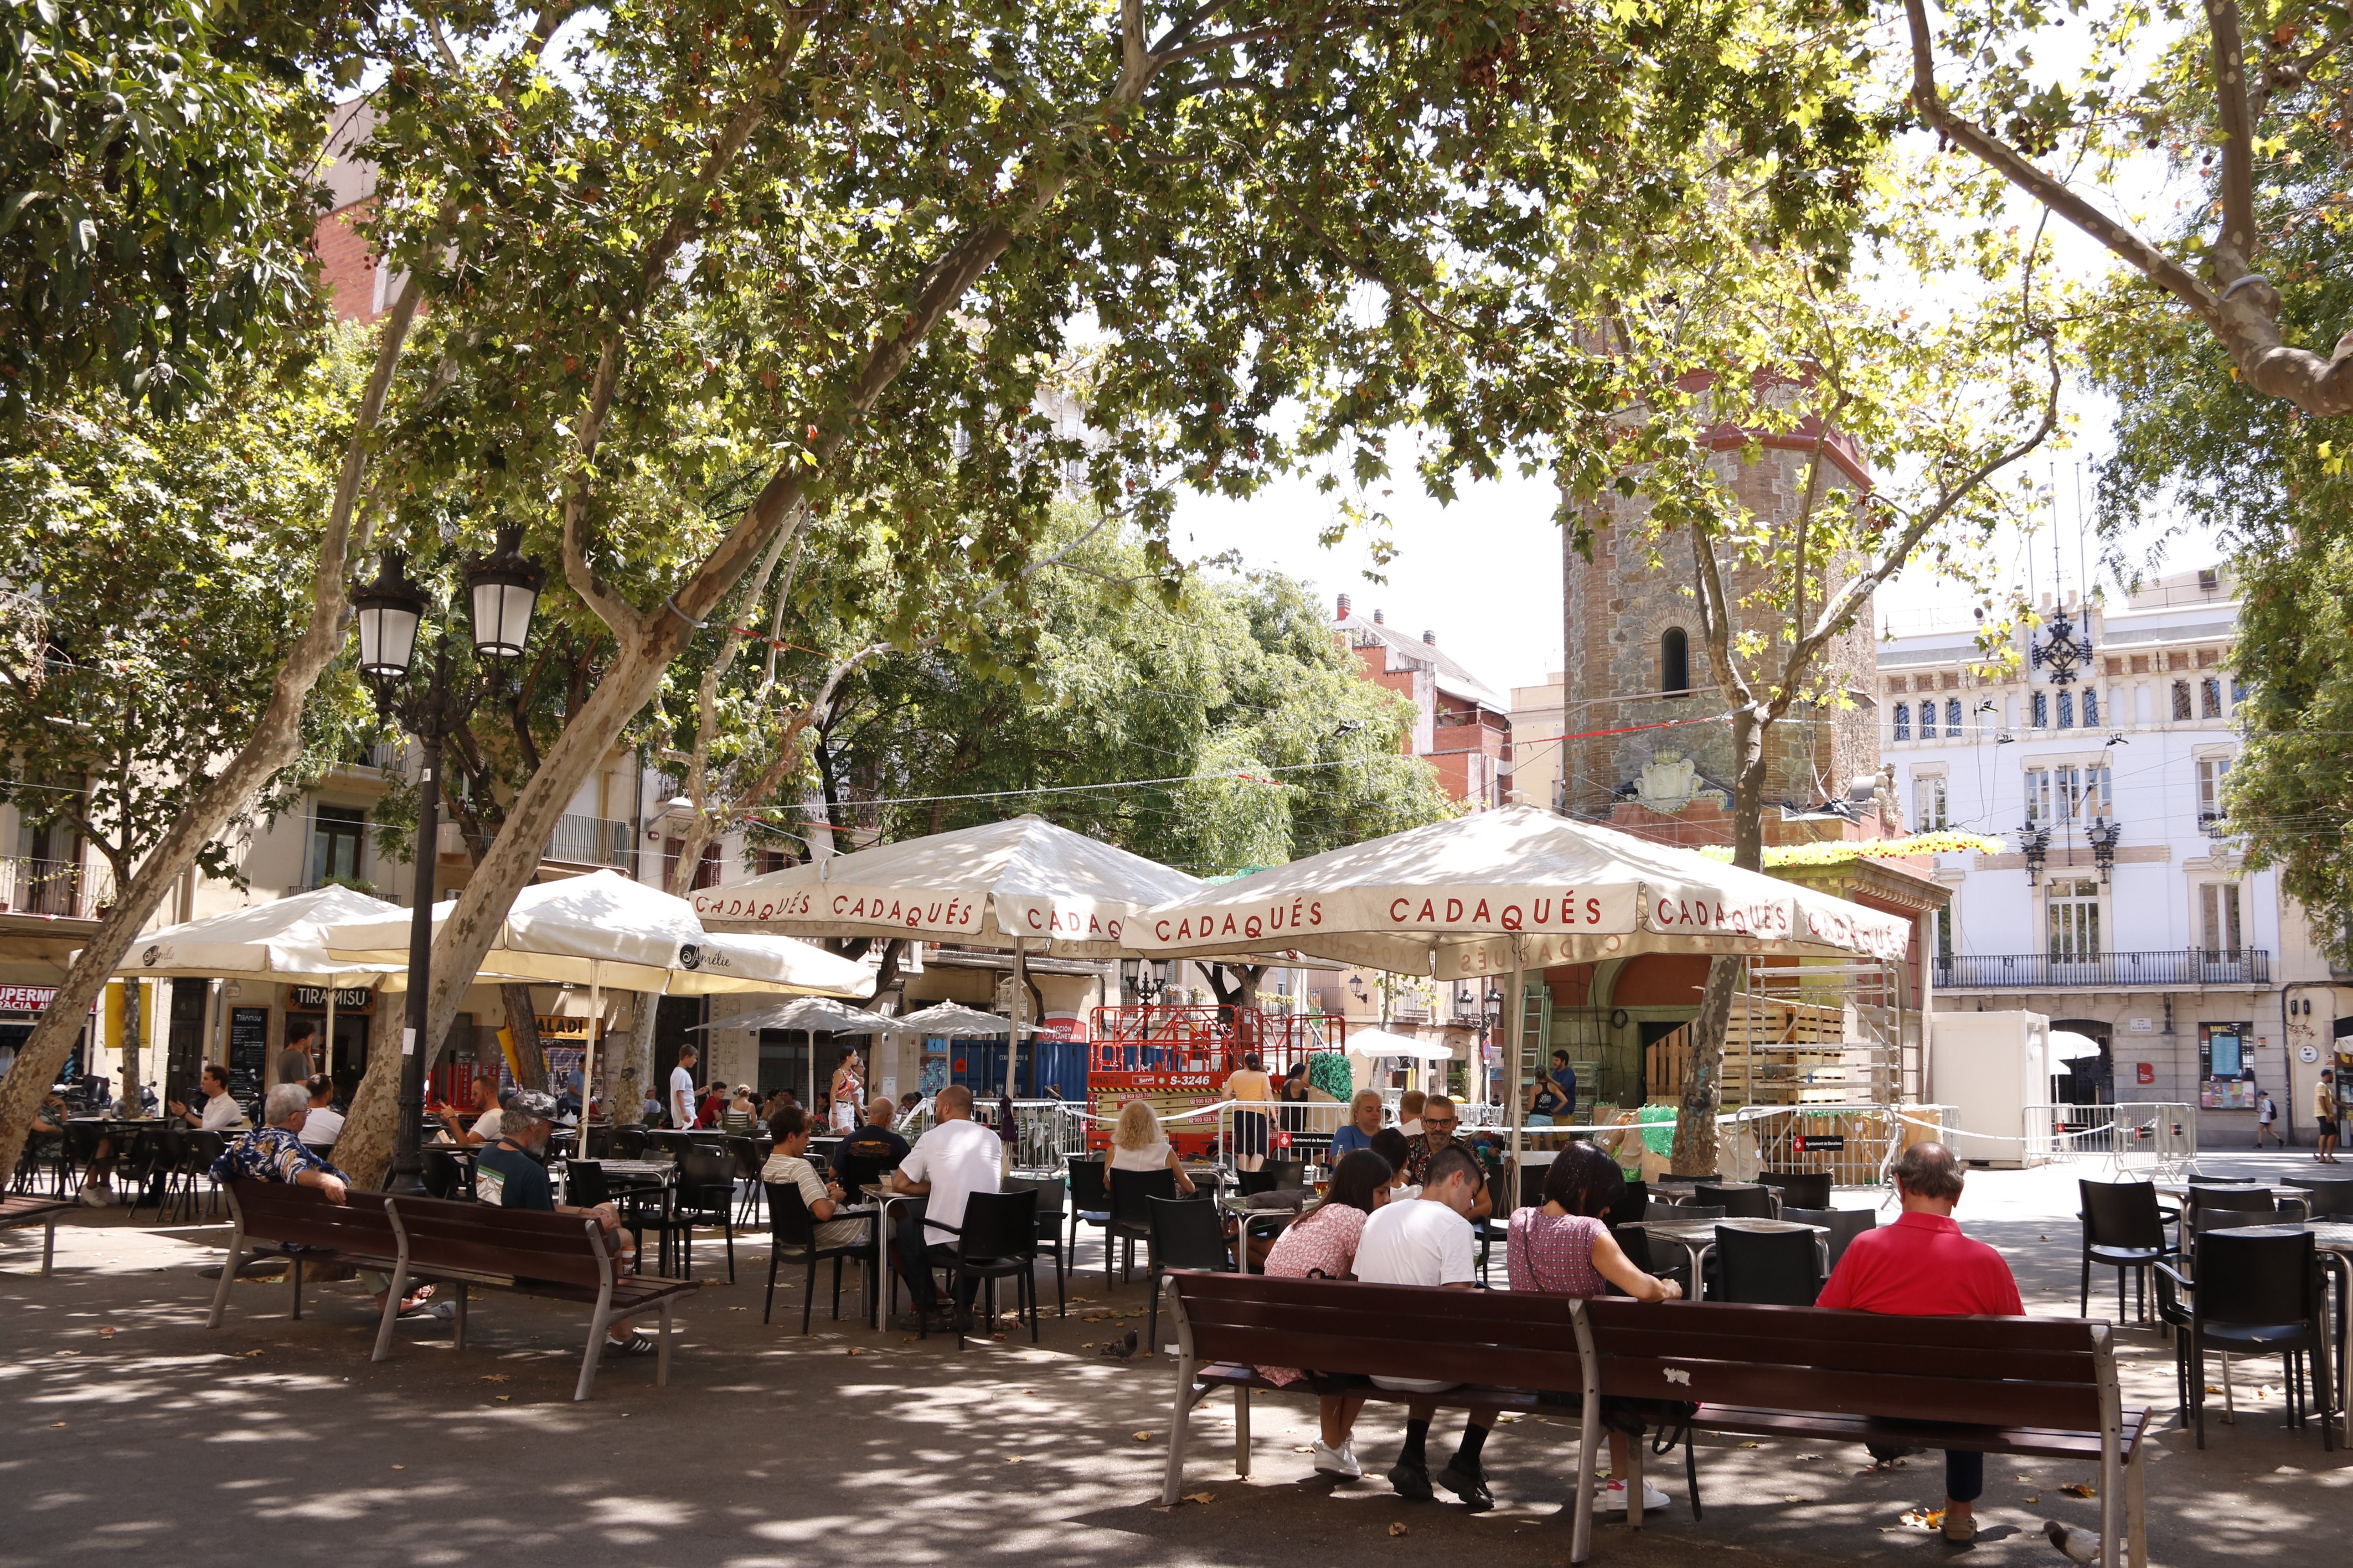 Indignación entre los propietarios de bares con terrazas en Gràcia por tener que cerrar antes